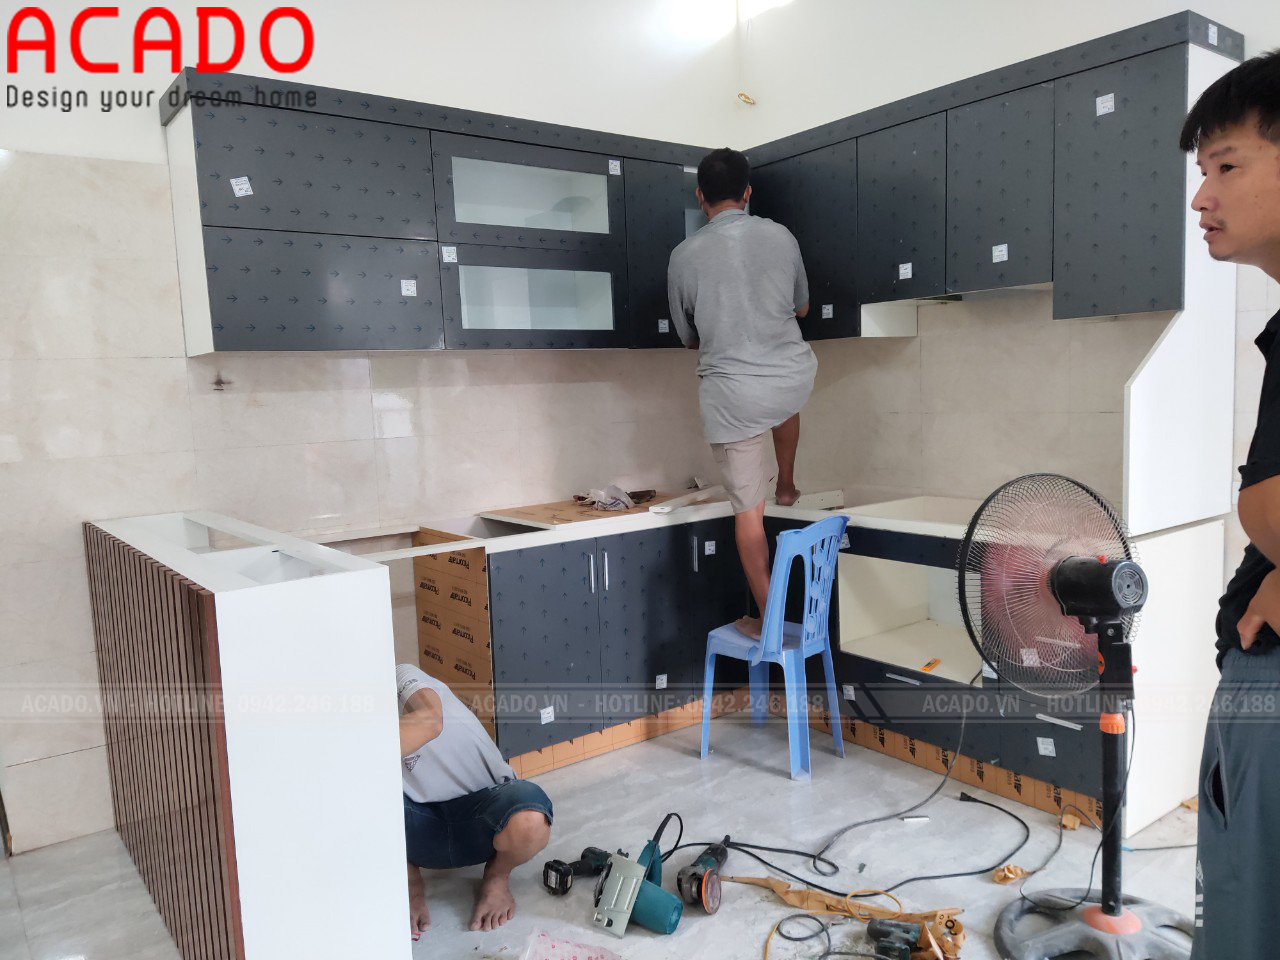 Bắt đầu quá trình thi công và lắp đặt tủ bếp tại Mê Linh - Nội thất ACADO